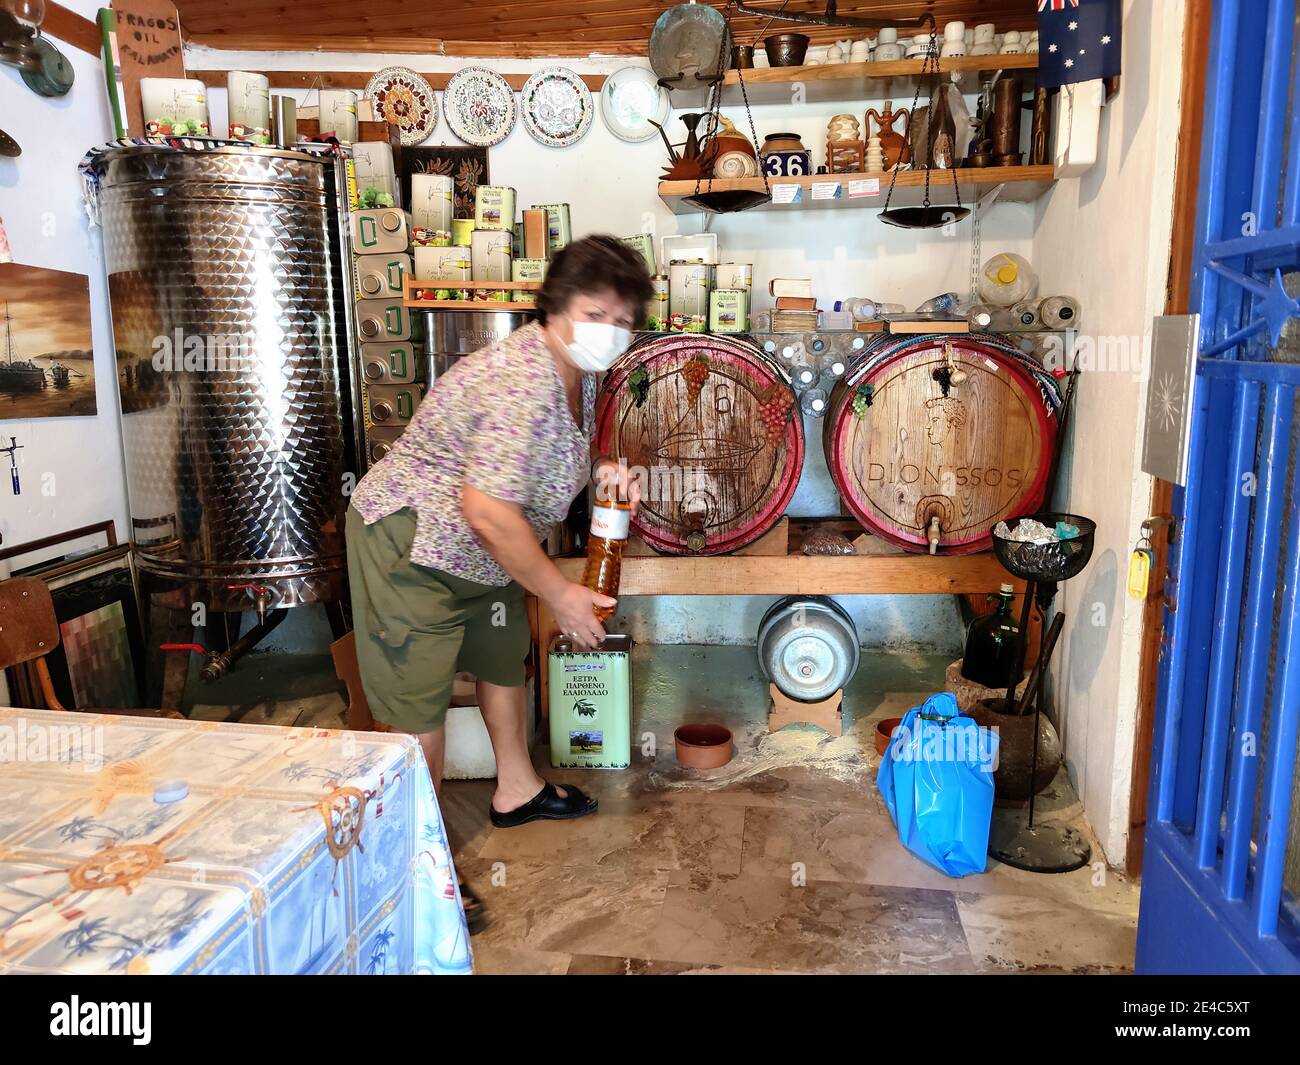 Vendita tipica di vino dalla botte di legno direttamente dal produttore, agricoltore con maschera protettiva, Corona Times, Messenia, Peloponneso, Grecia Foto Stock